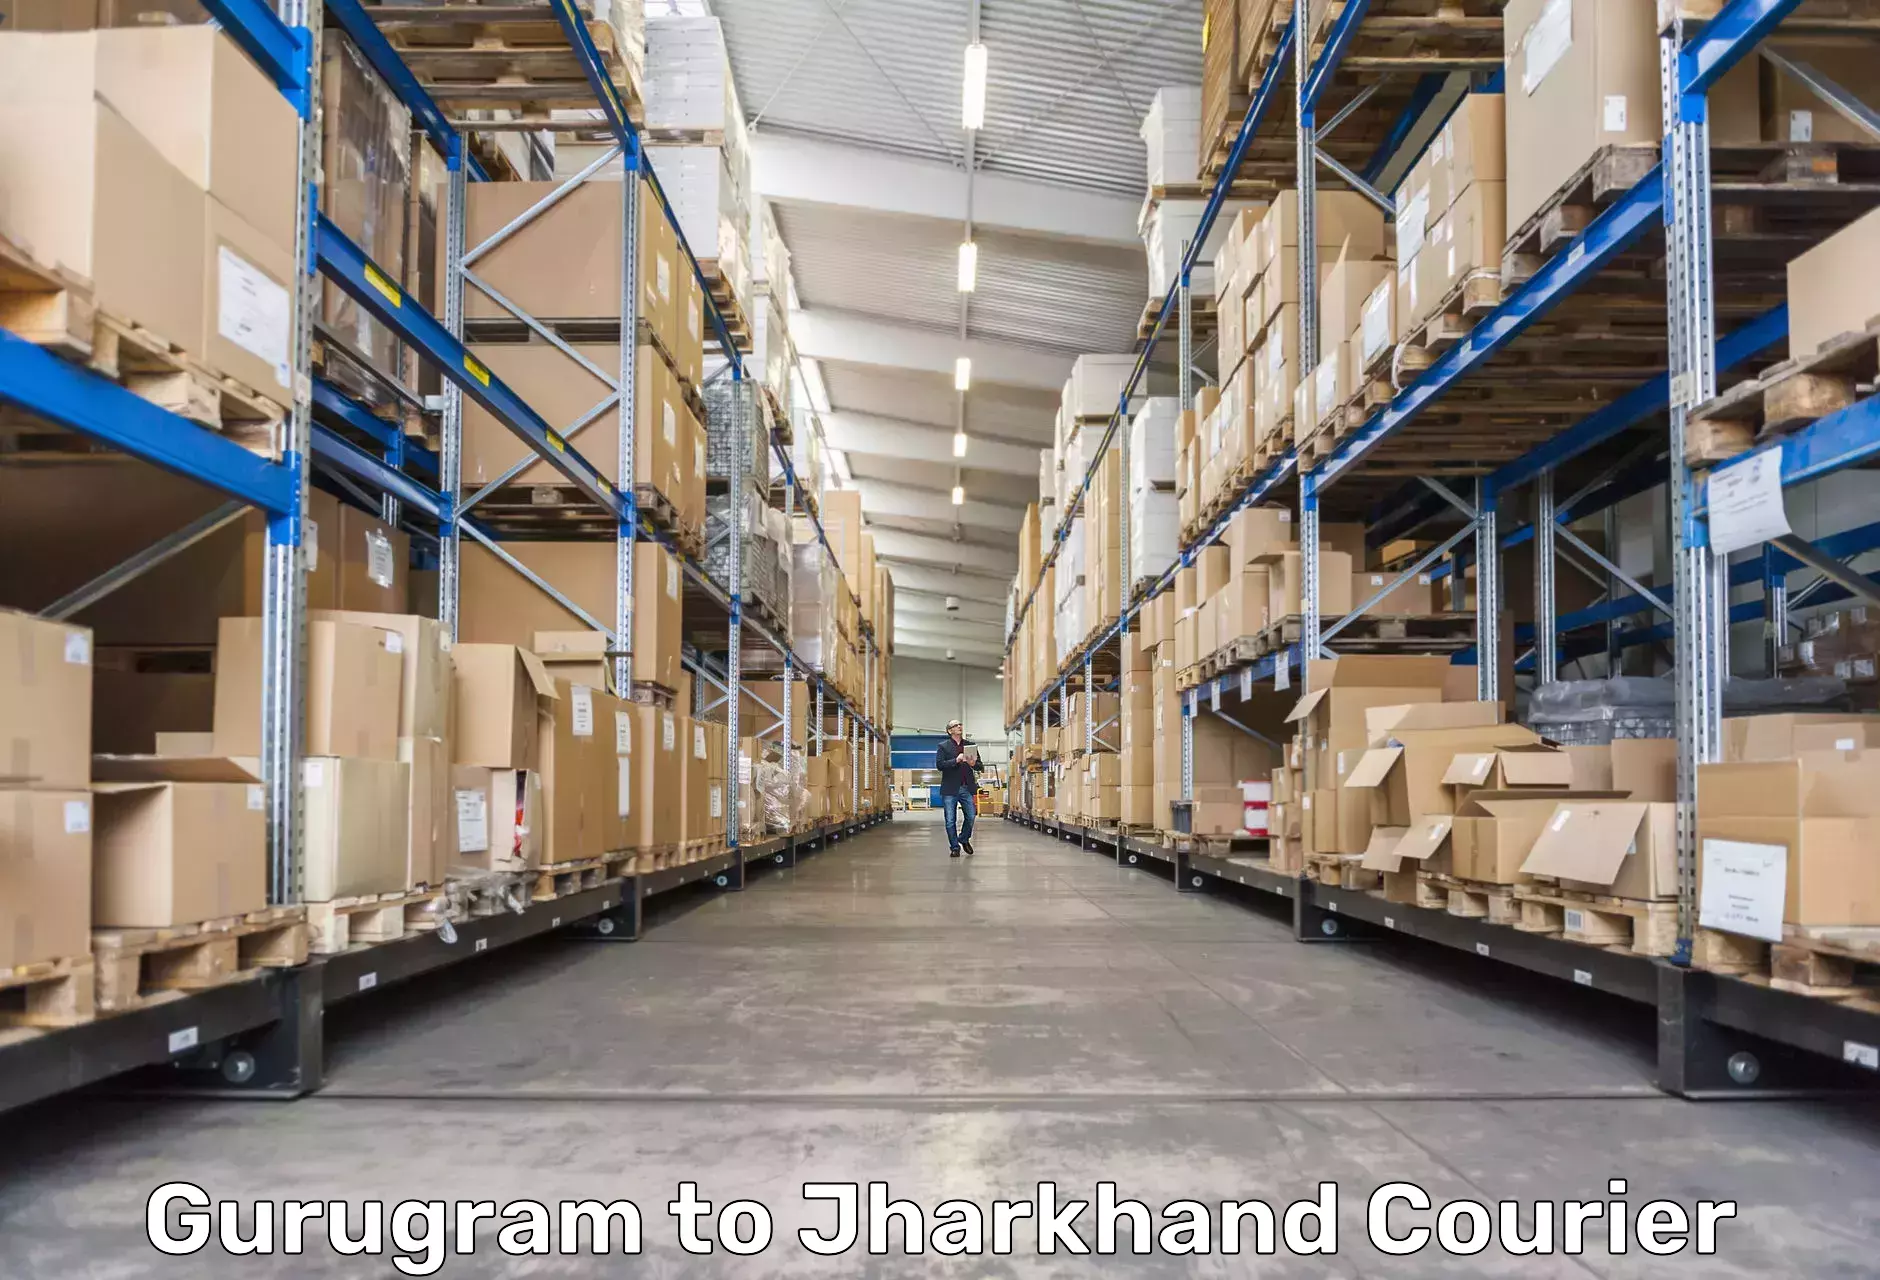 High-priority parcel service Gurugram to Dhalbhumgarh